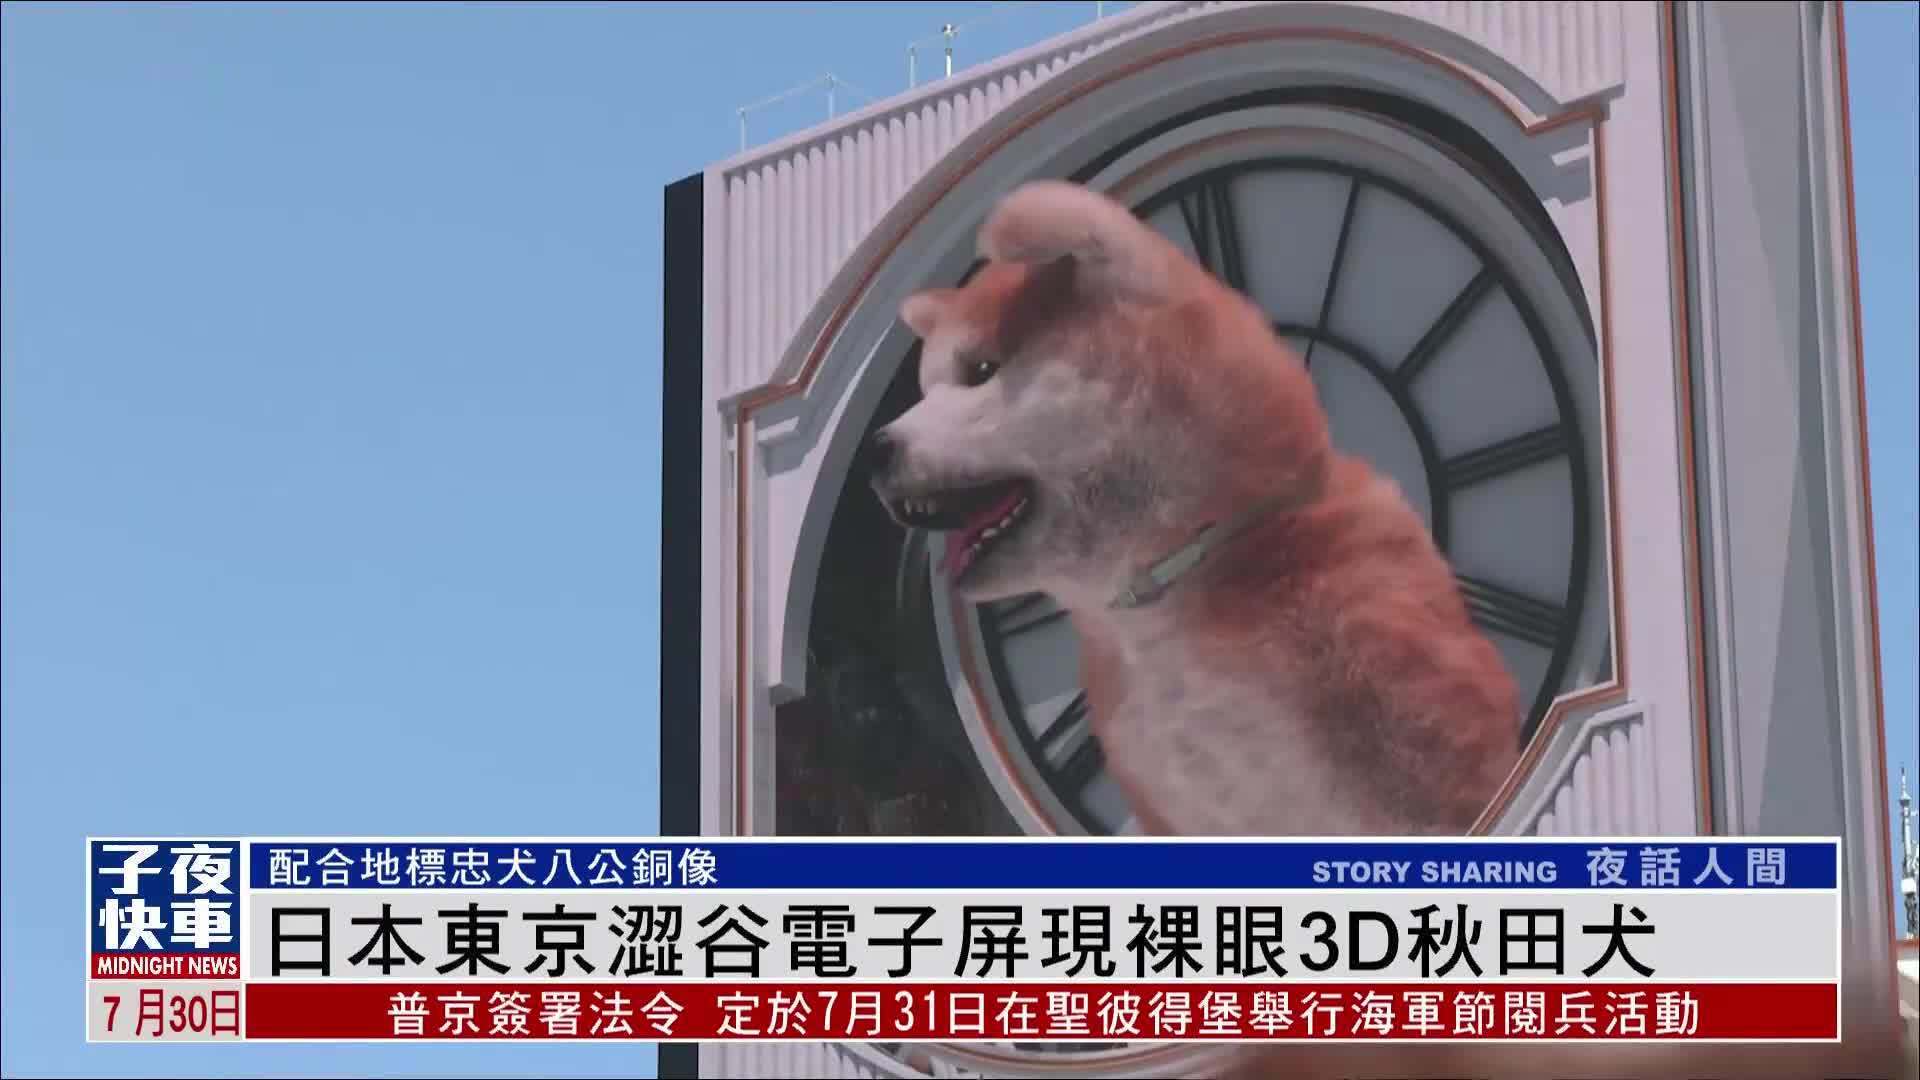 日本东京涩谷电子屏现裸眼3D秋田犬